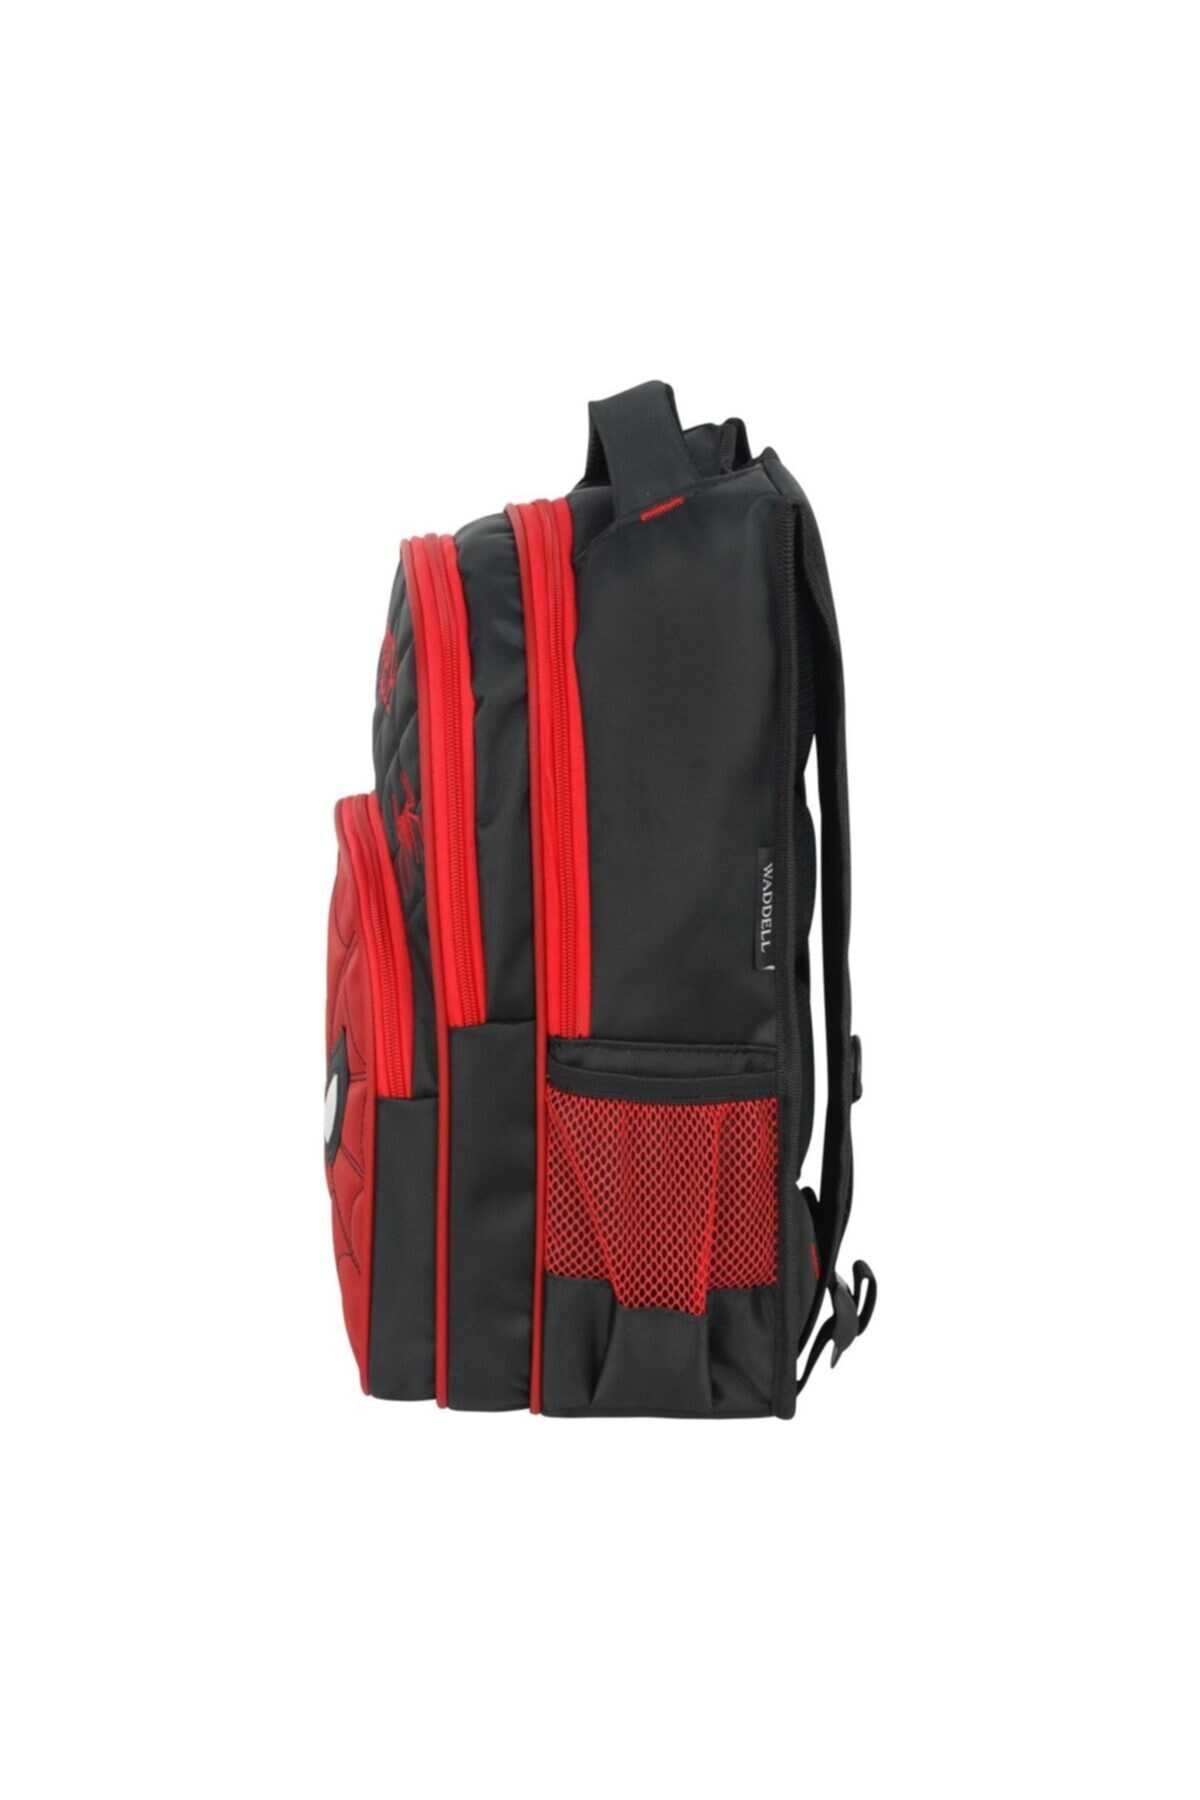 کیف پسرانه دبستانه طرح دار قرمز برند Waddell